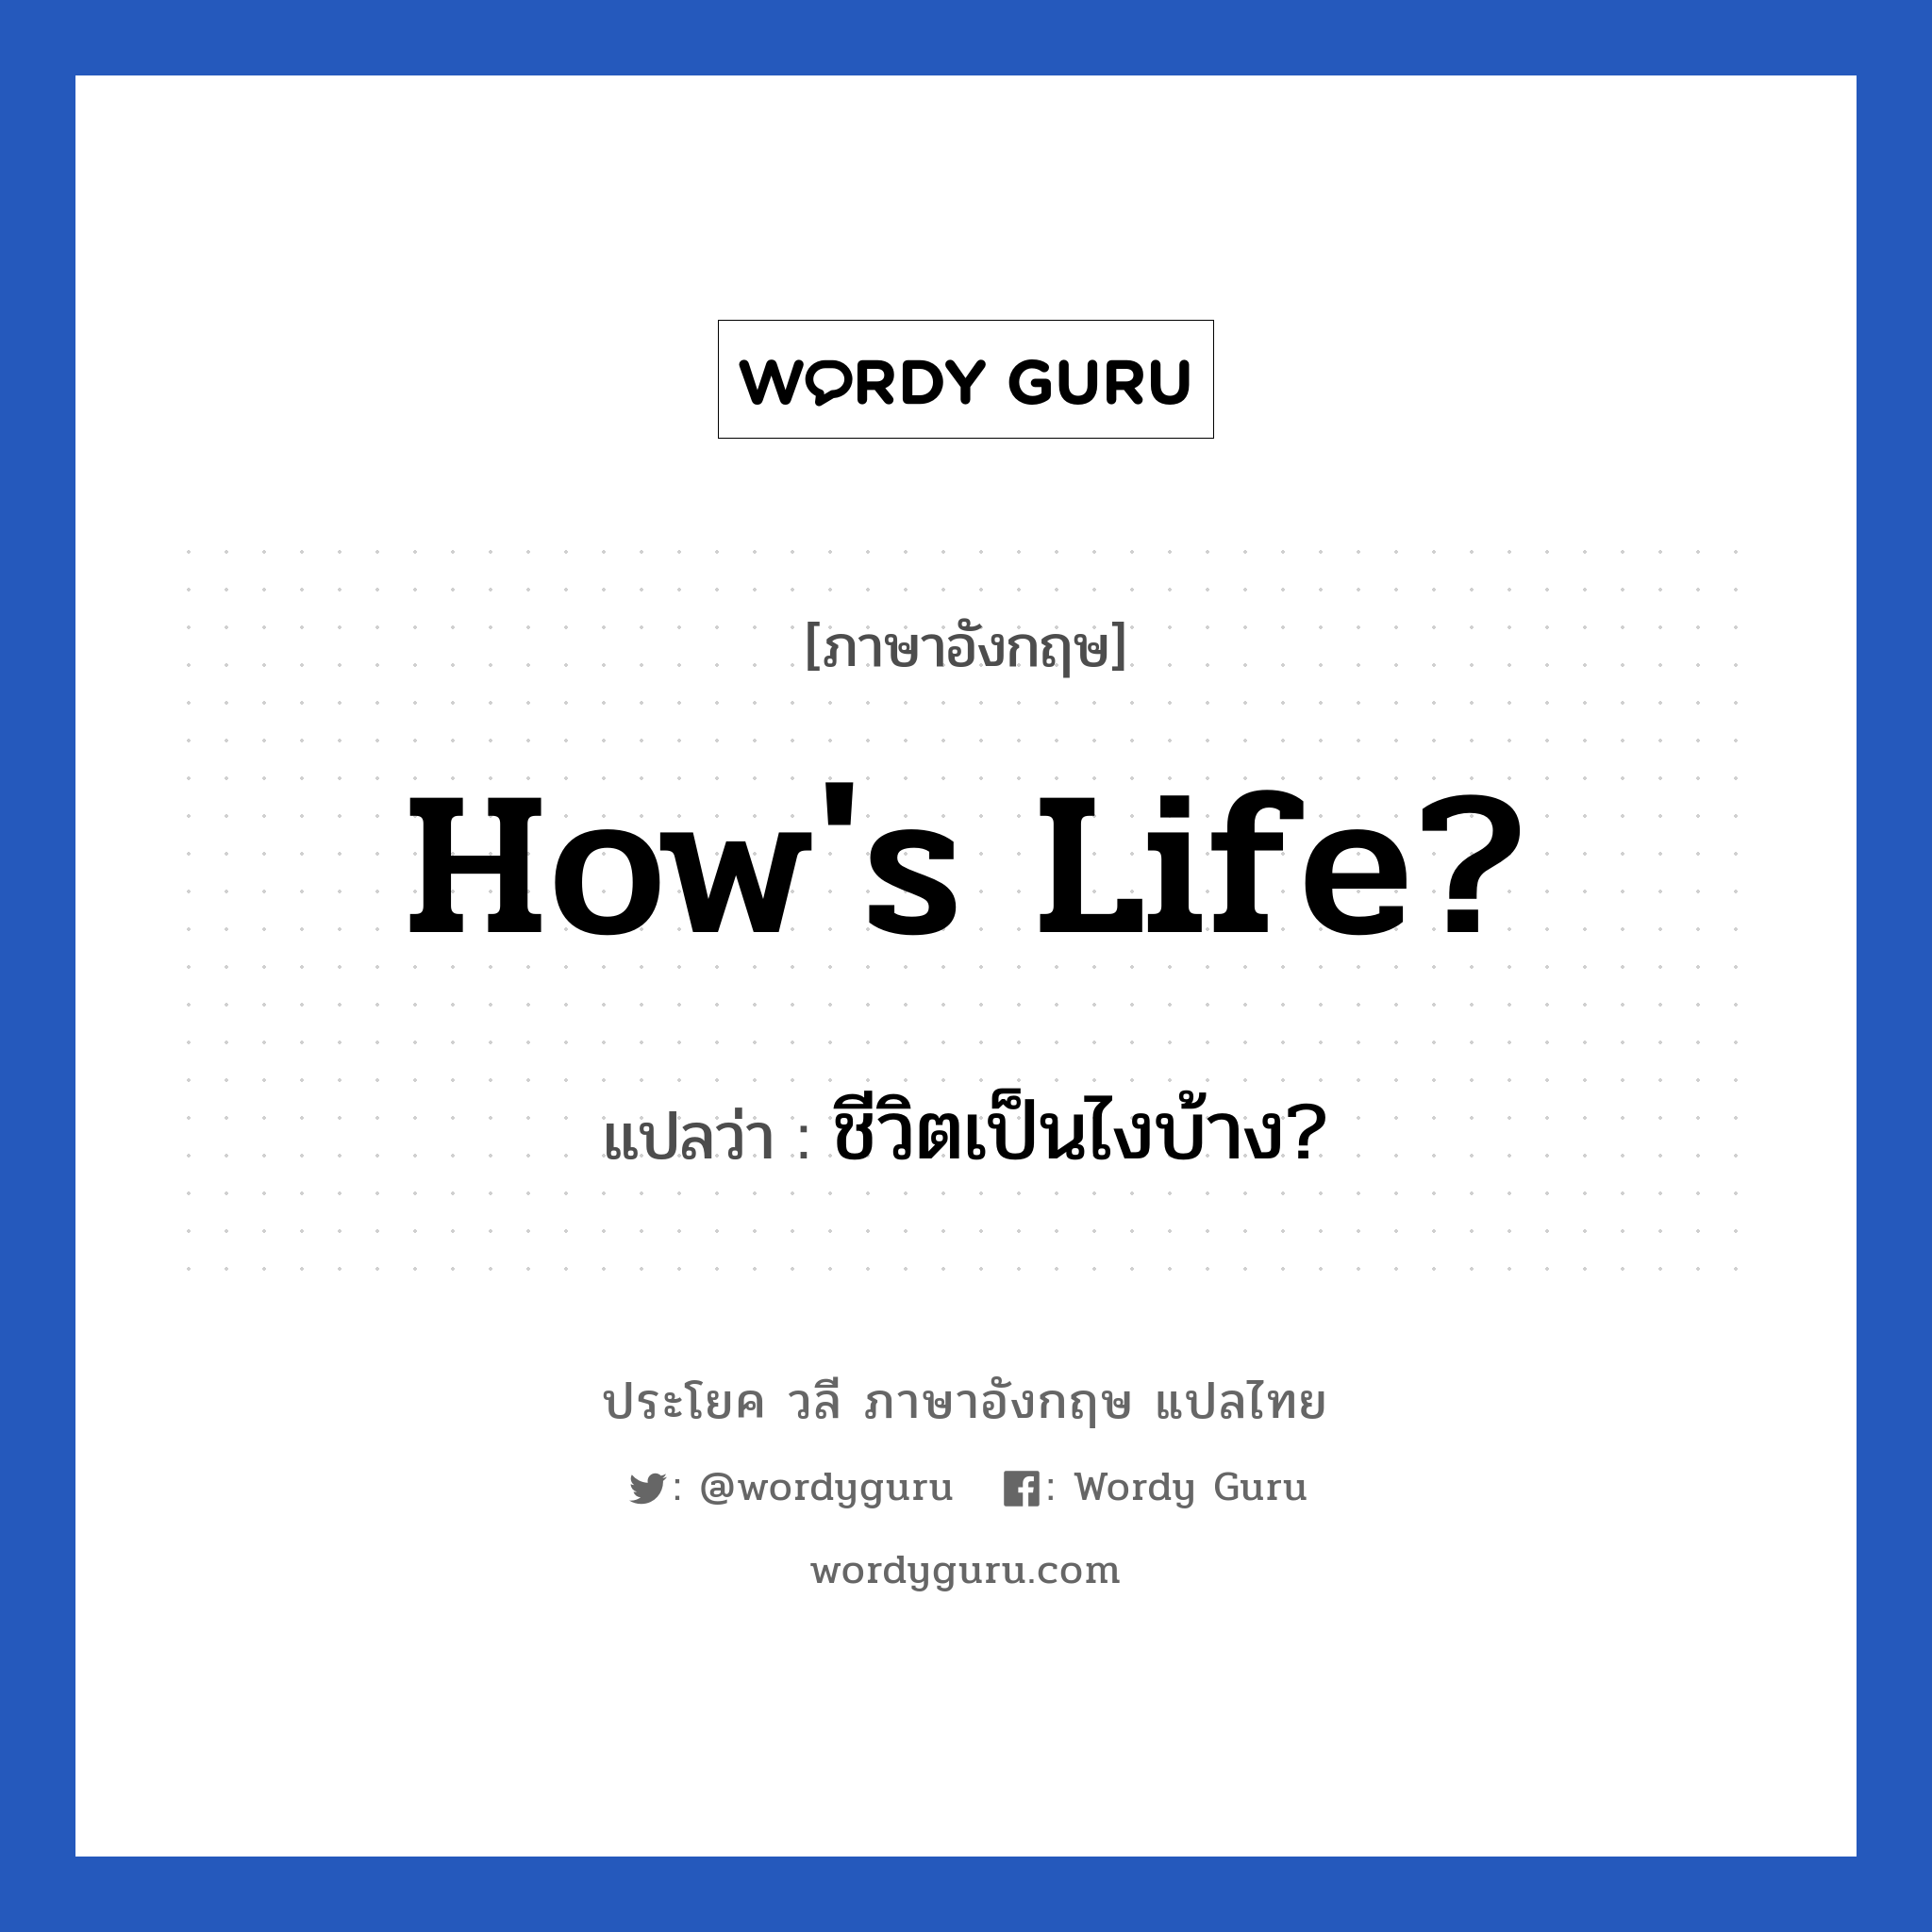 How's life? แปลว่า?, วลีภาษาอังกฤษ How's life? แปลว่า ชีวิตเป็นไงบ้าง?